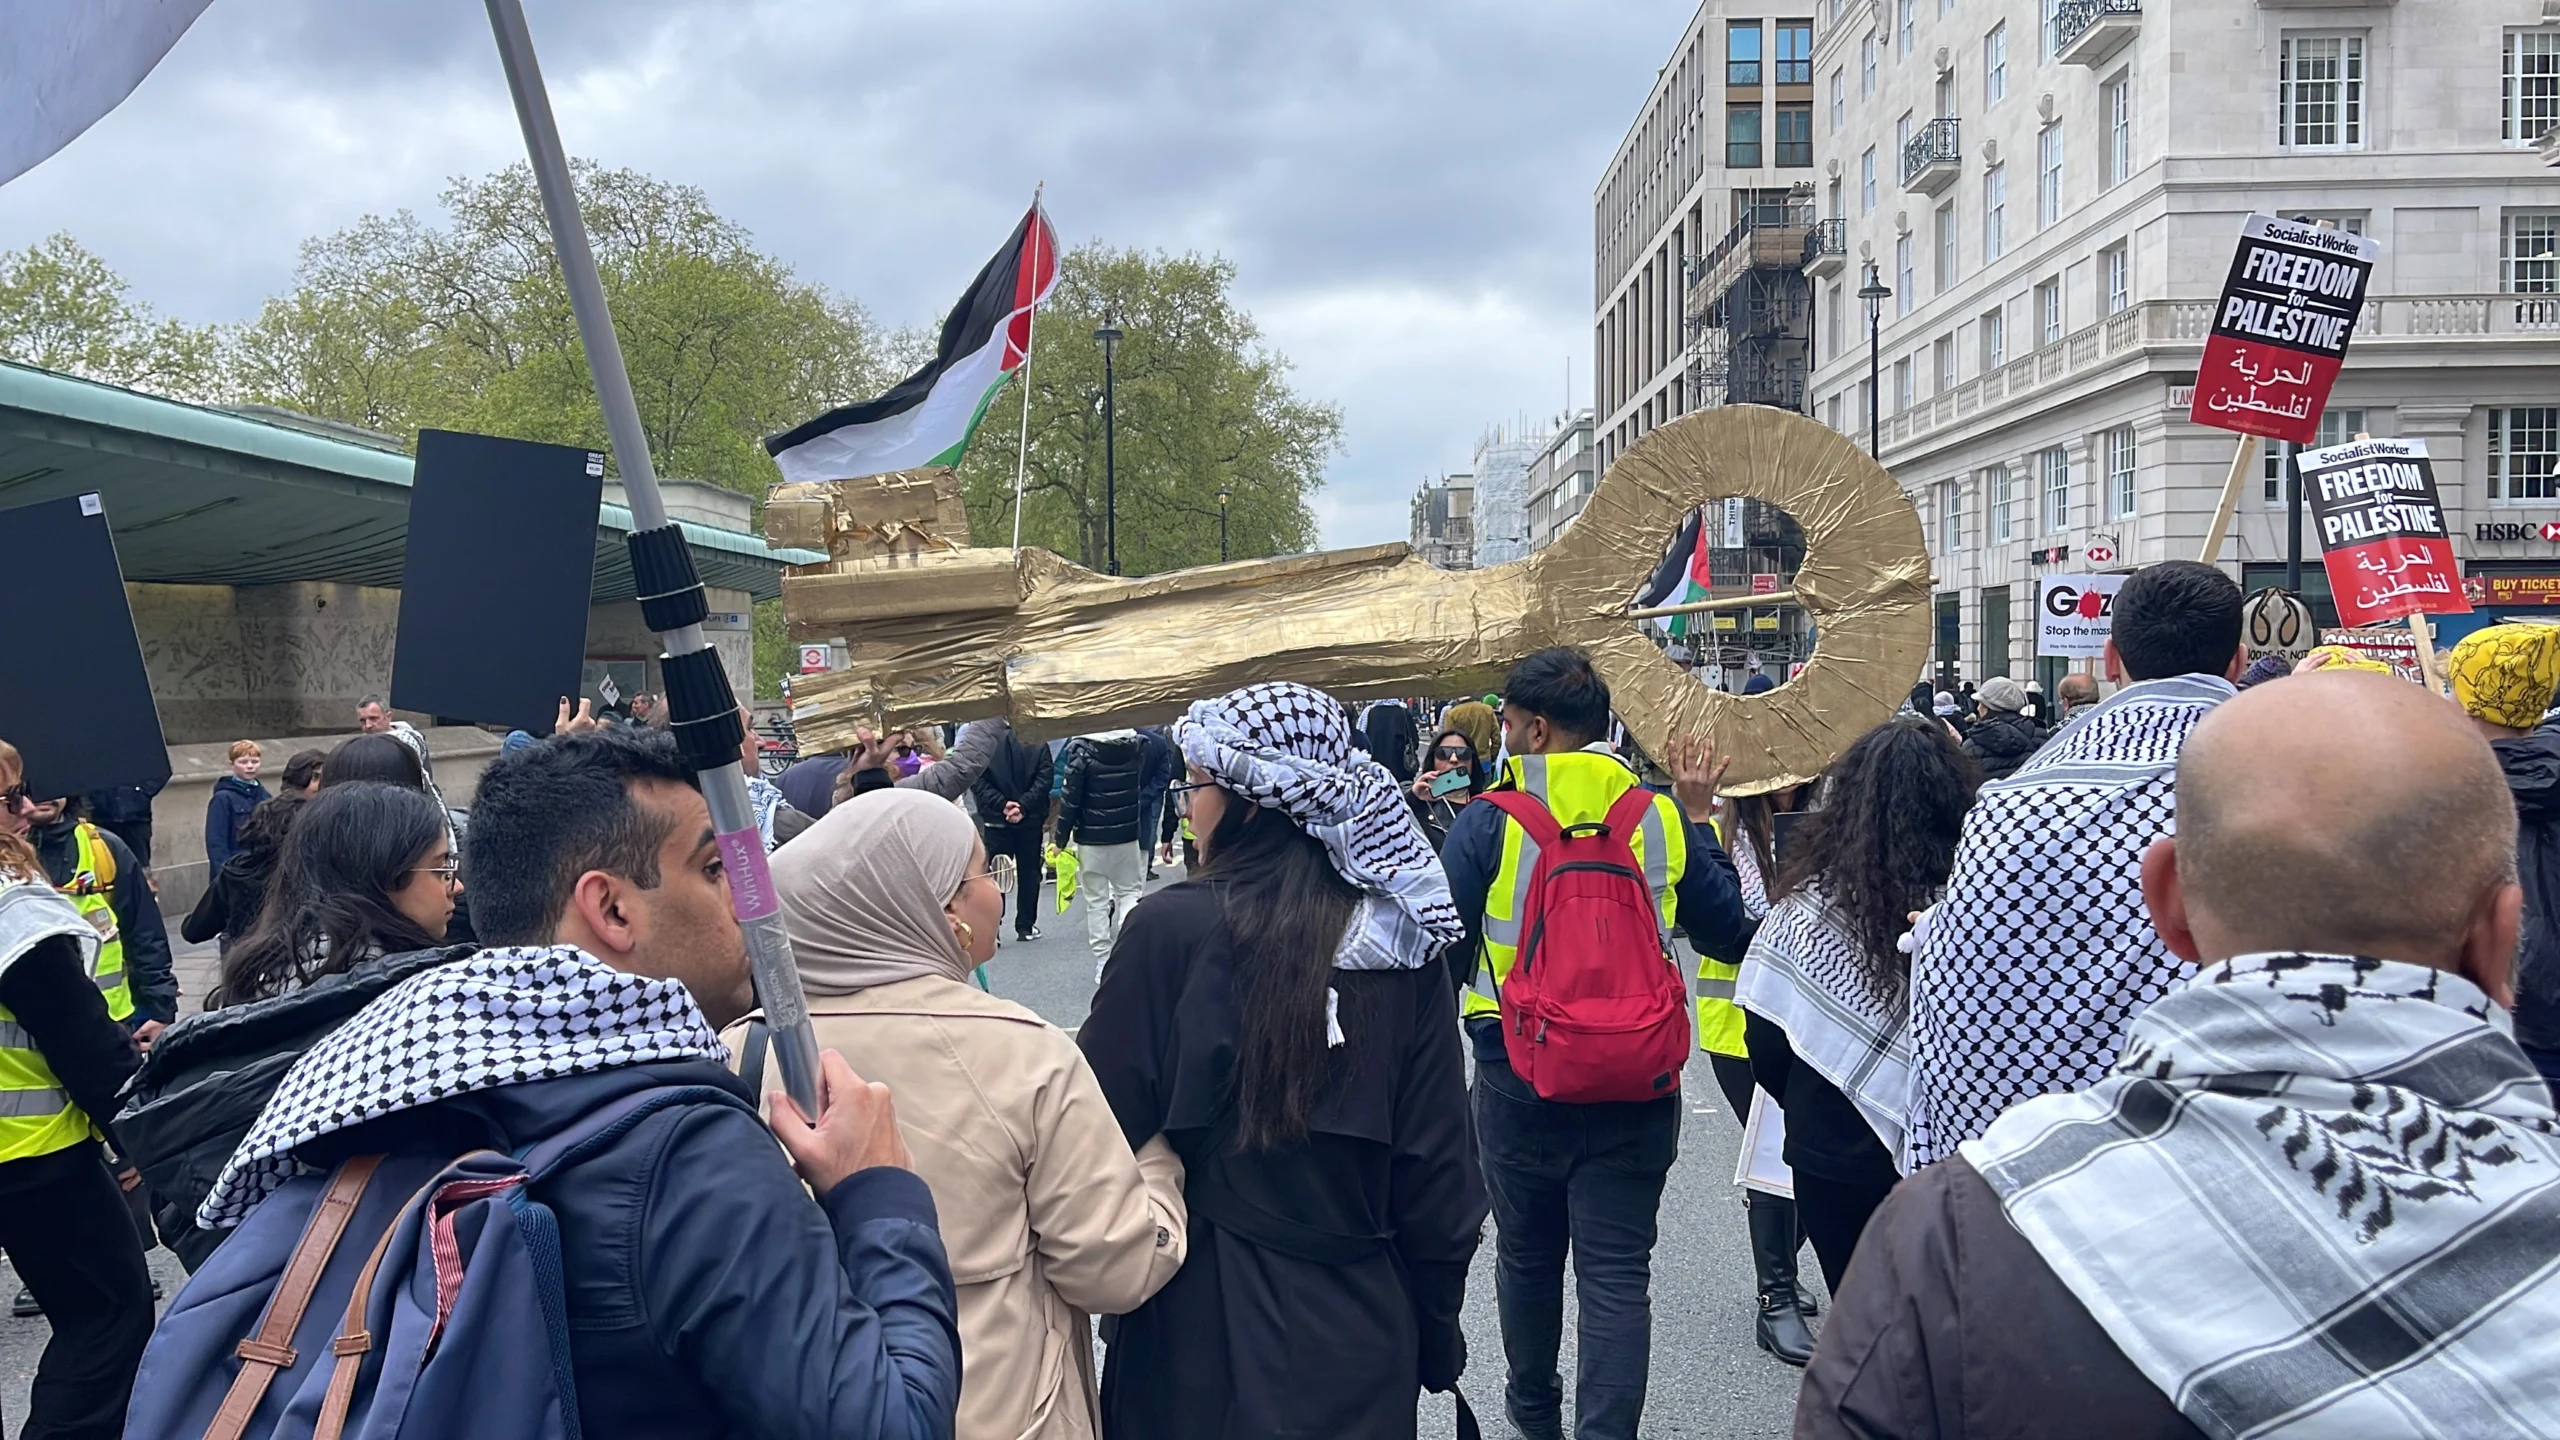 مفتاح العودة يجول شوارع لندن مرفوعًا بأيد عربية